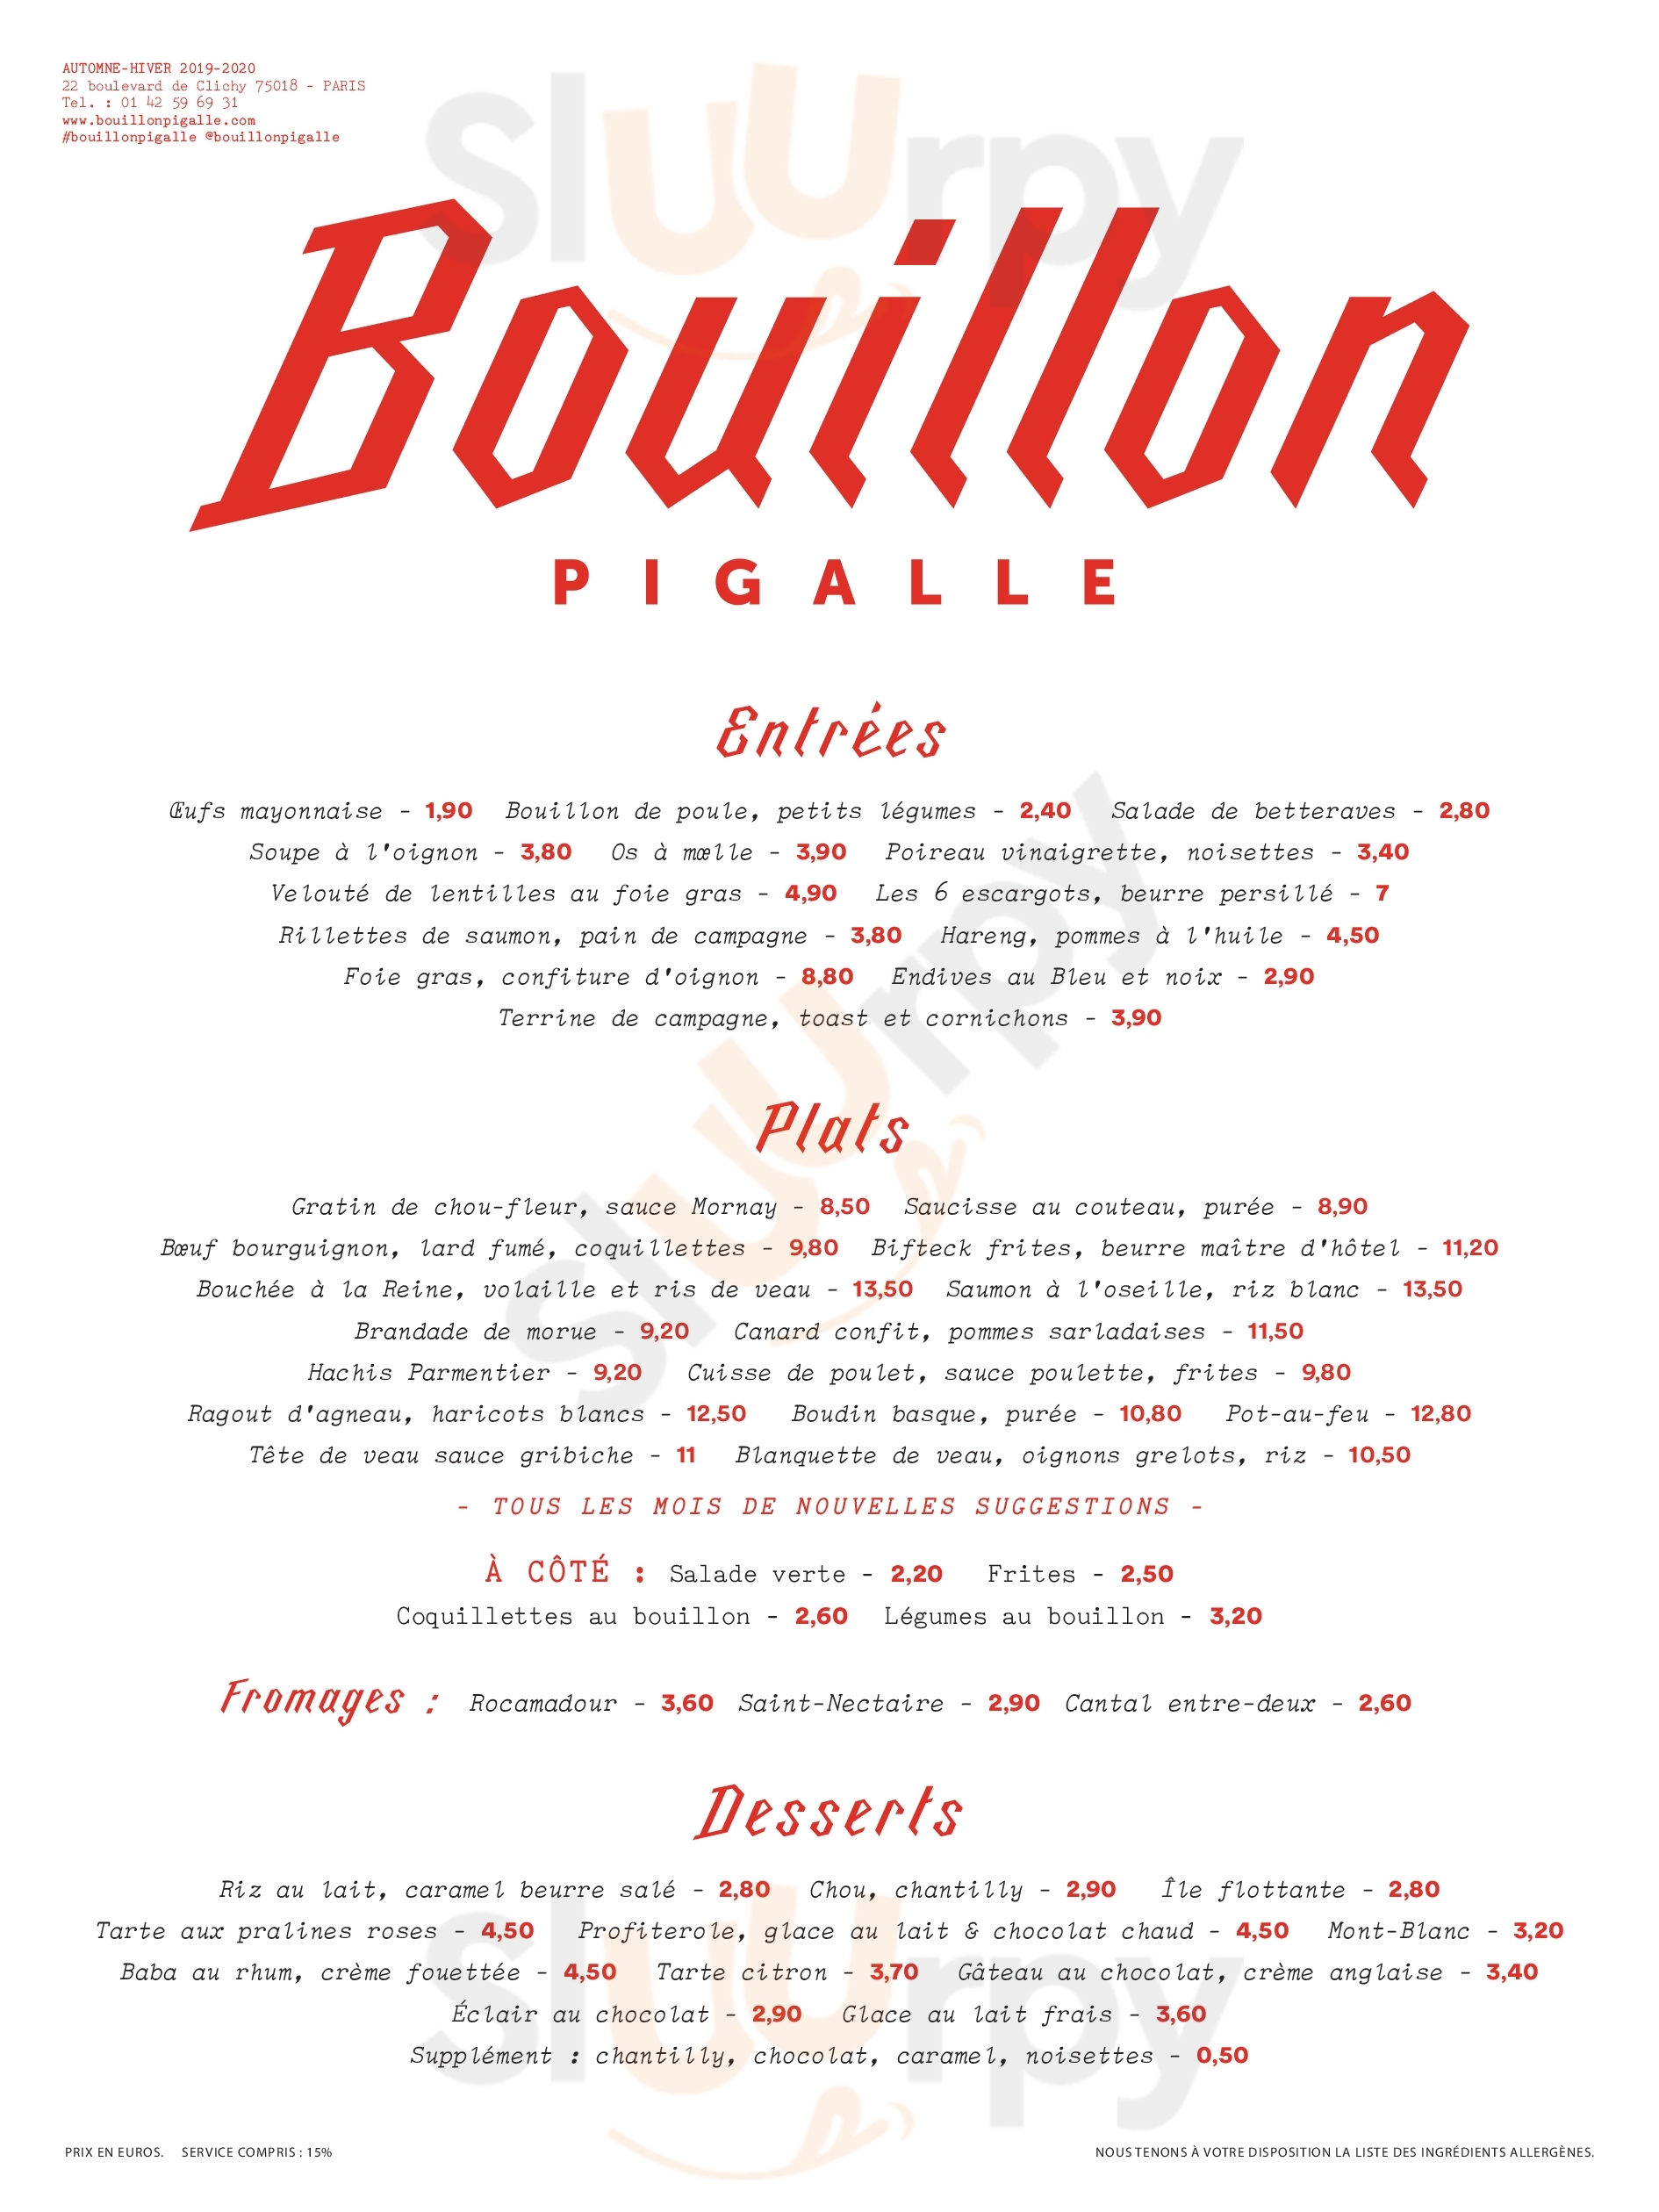 Bouillon Pigalle Paris Menu - 1